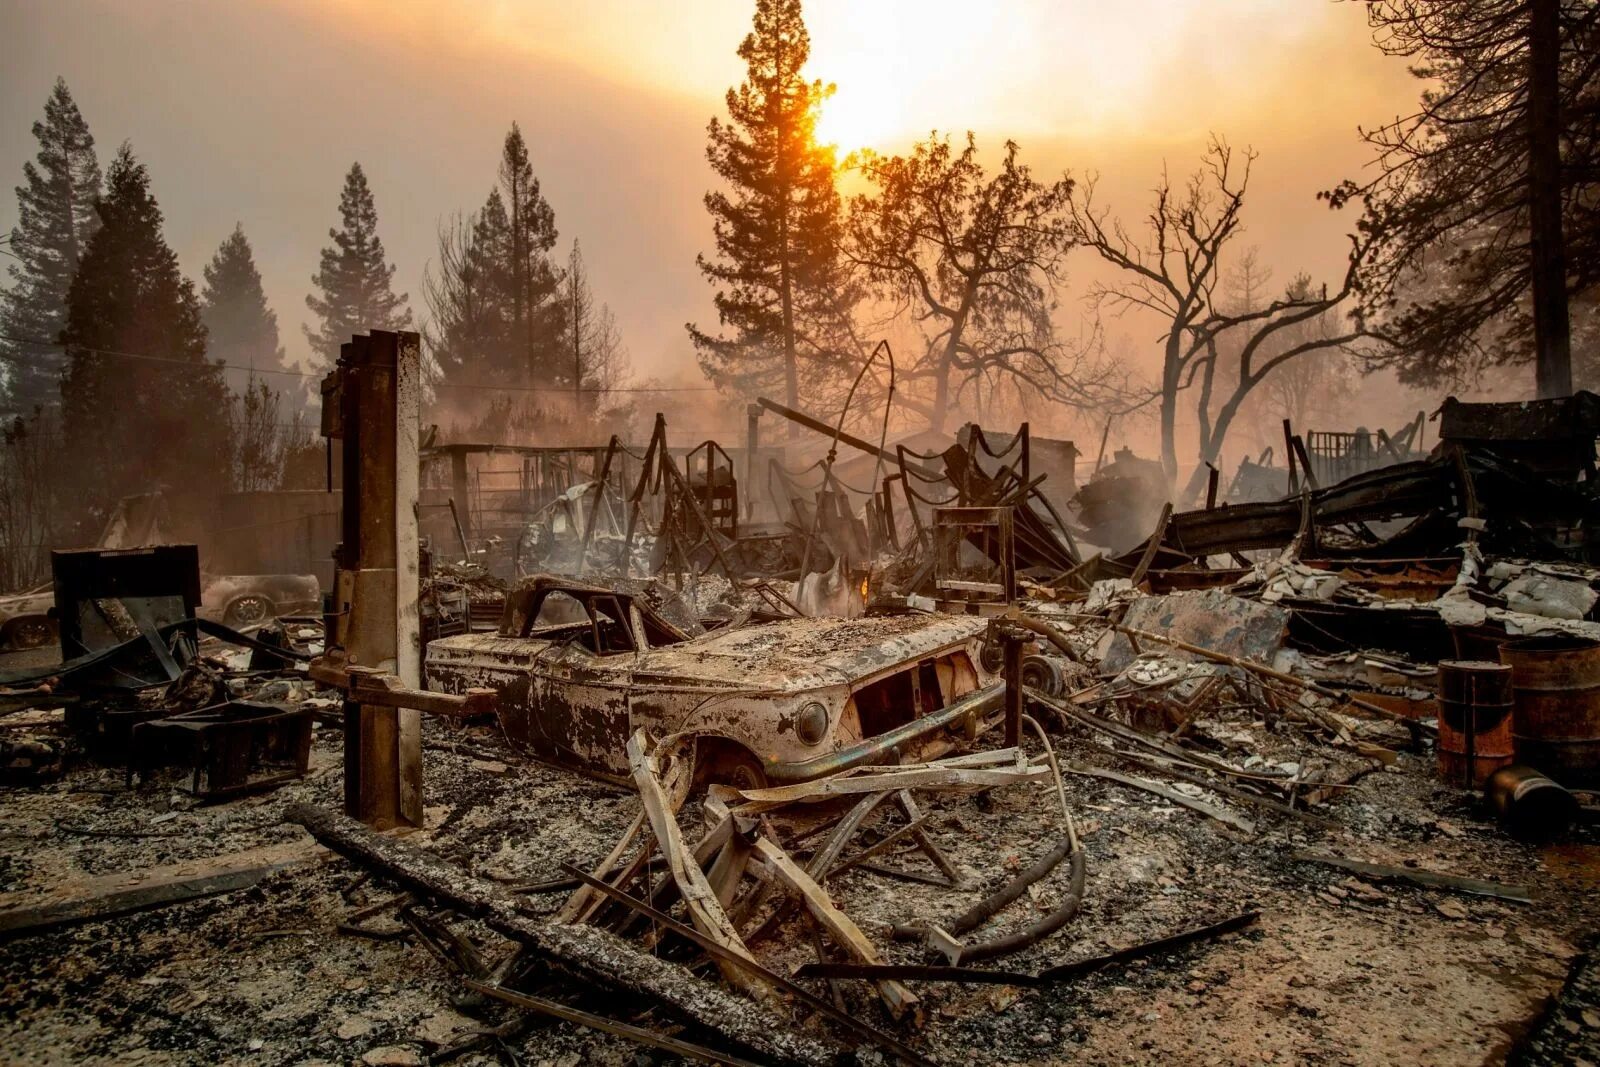 Город после пожара. Город Парадайз Калифорния пожар. Пожар в Калифорнии Парадайз. Парадайз пожар 2018 Калифорния. Город Парадайс Калифорния после пожара.